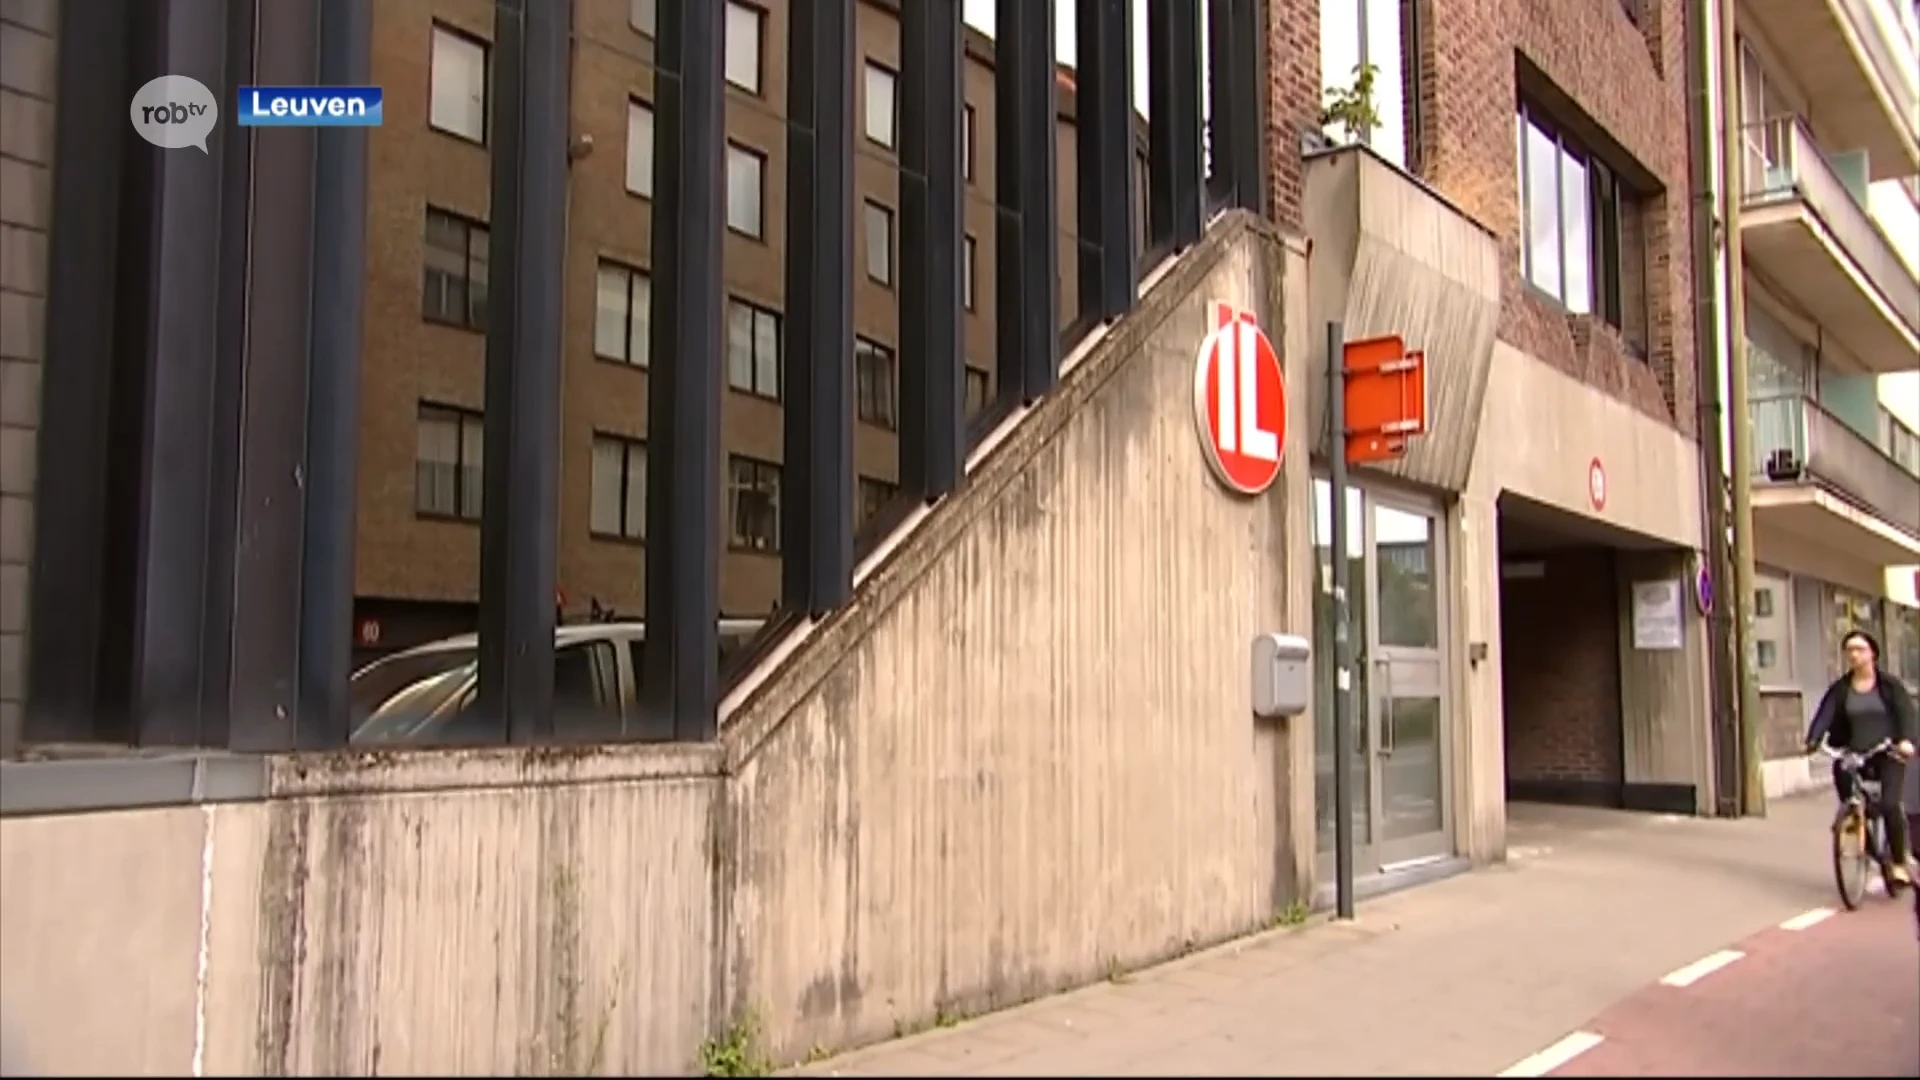 Eindelijk meer duidelijkheid over parking Benedenstad in Leuven: niet onder Bruul, wel onder gebouw van Interleuven